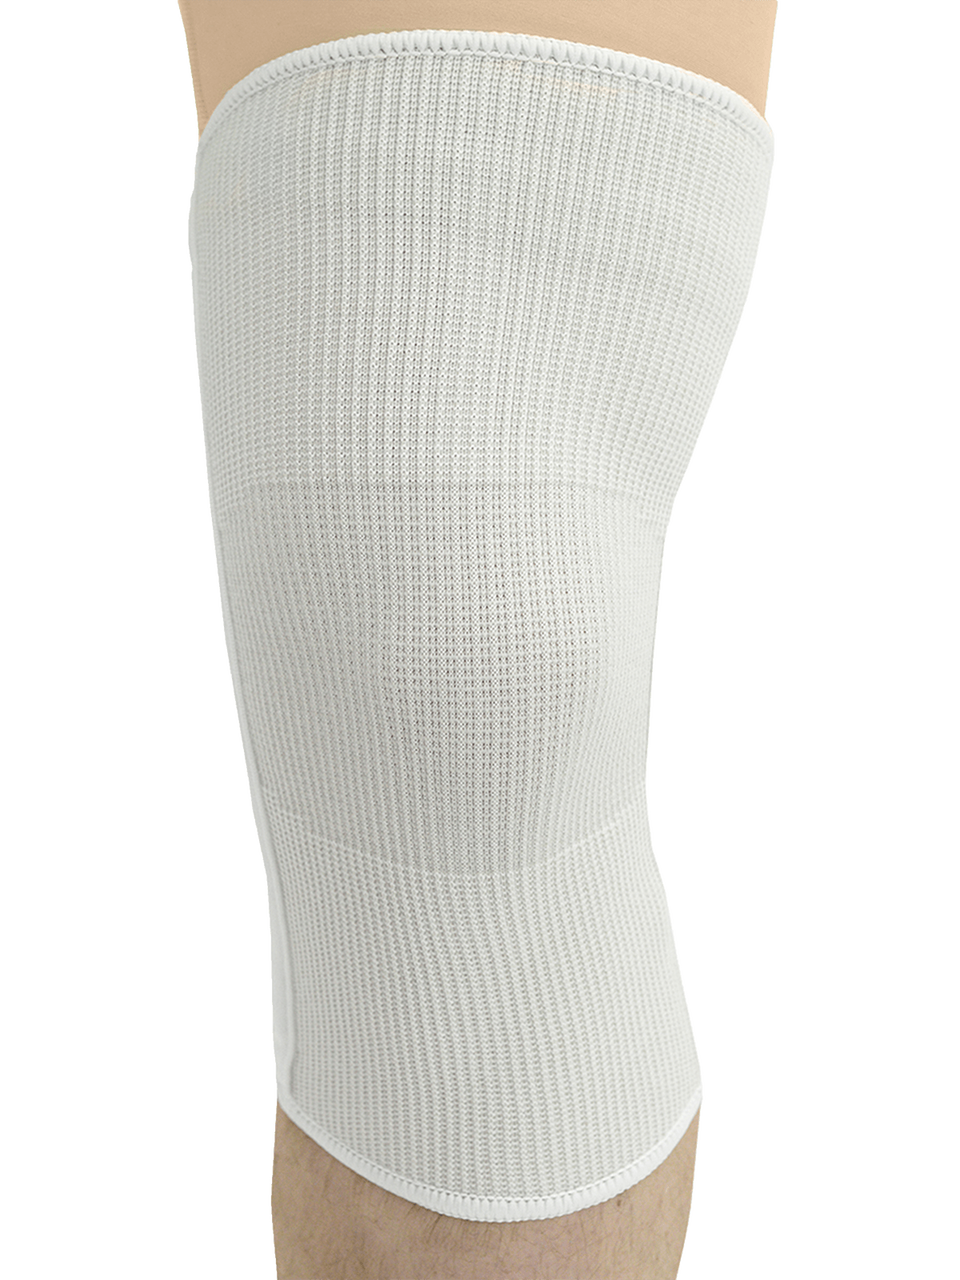 MAXAR Wool/Elastic Knee Brace with Spiral Metal Stays - White